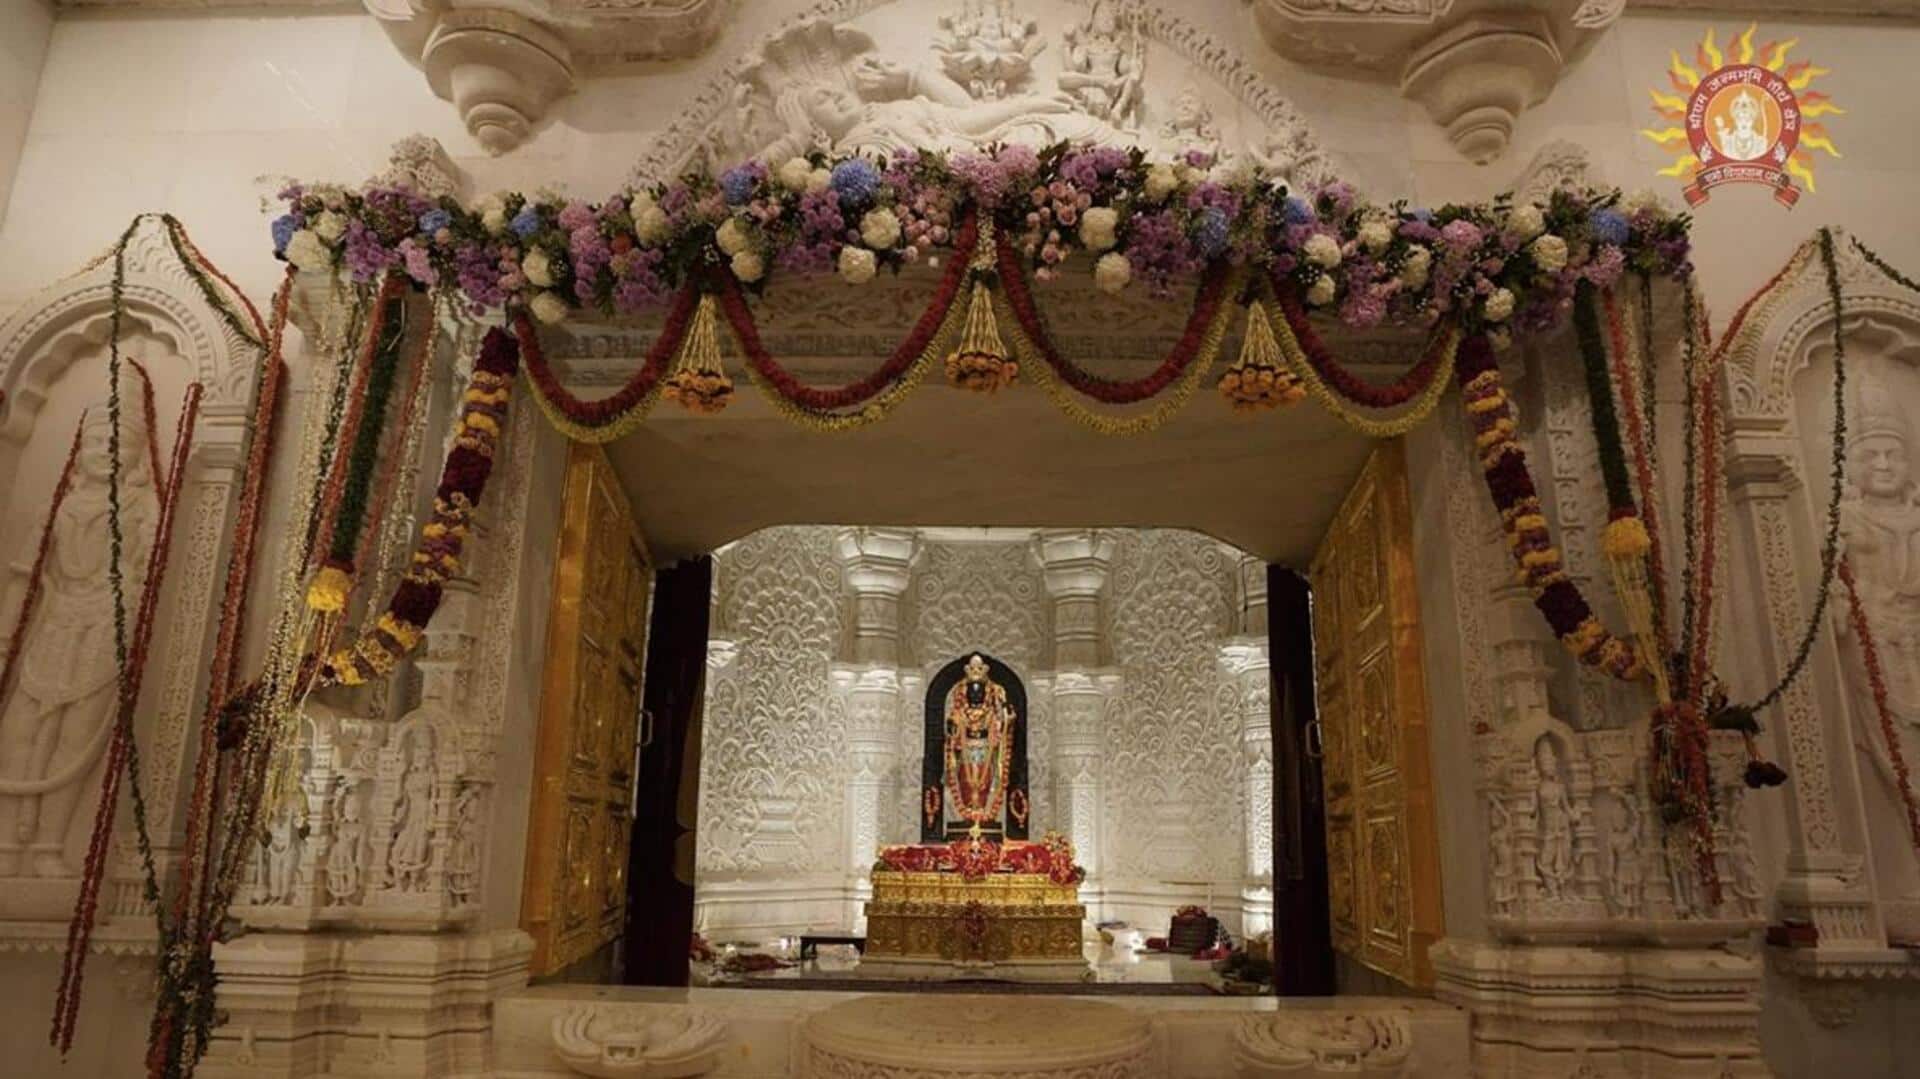 ராம நவமி அன்று அயோத்தி ராமர் கோயில் 19 மணி நேரம் திறந்திருக்கும்